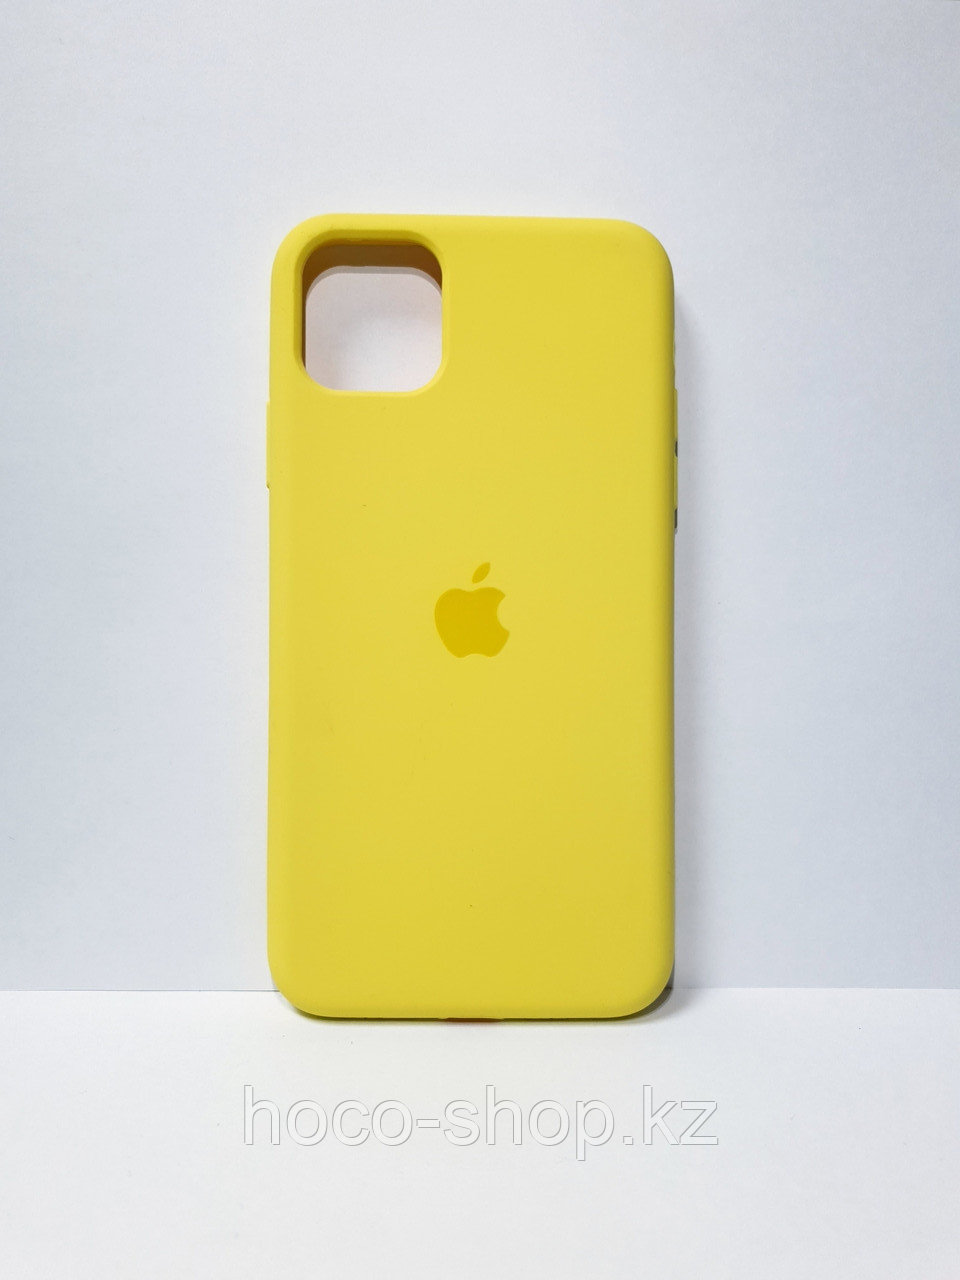 Защитный чехол для iPhone 11 Pro Soft Touch силиконовый, желтый